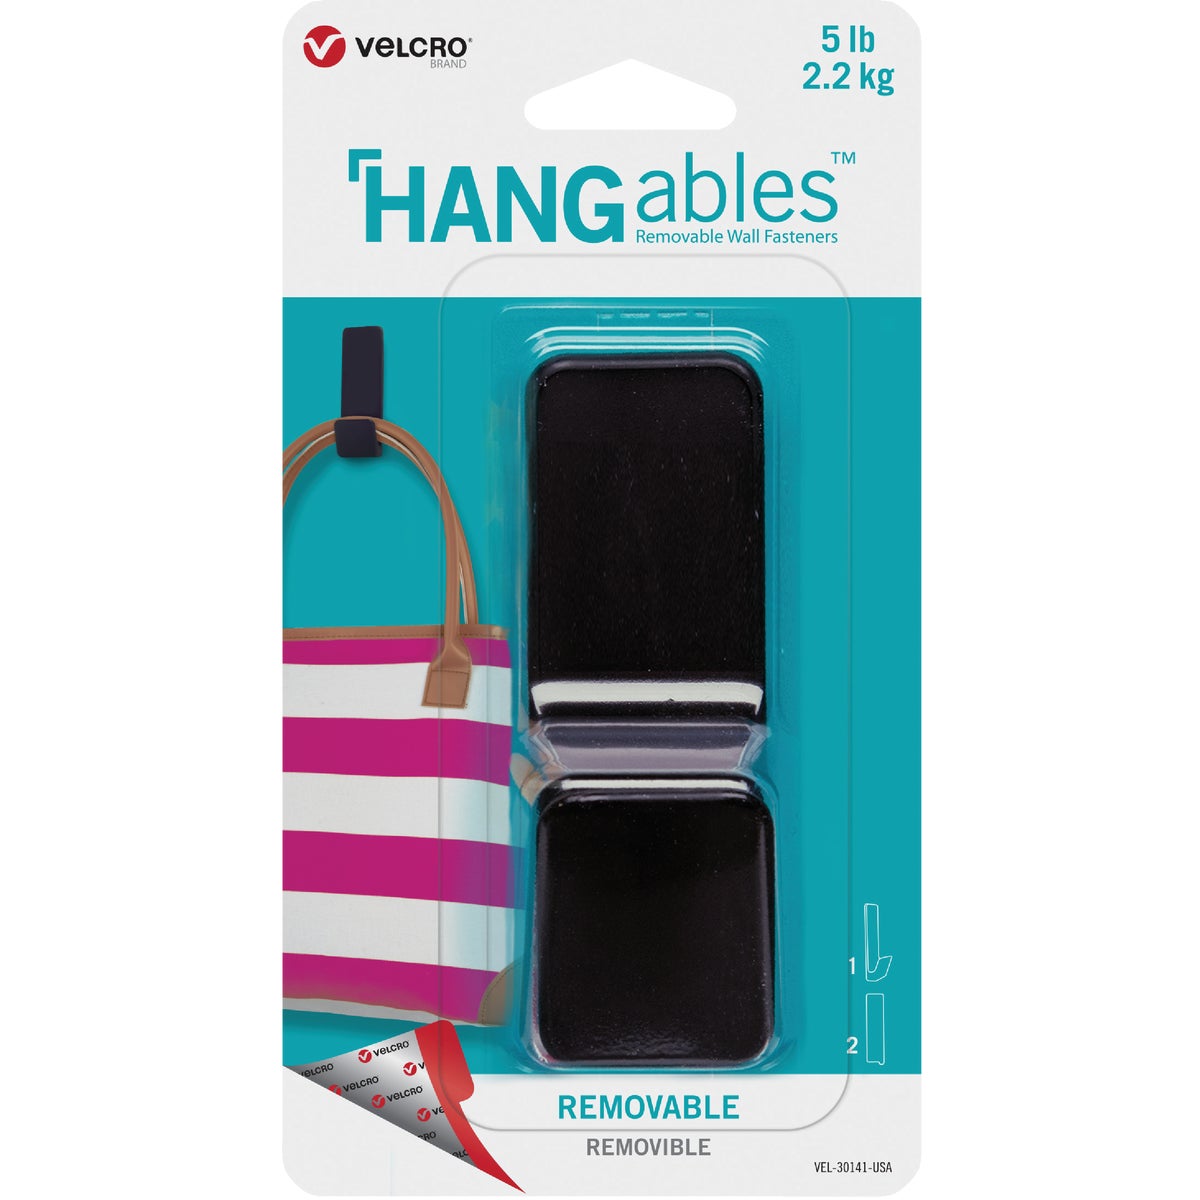 Hangables VELCRO Brand VEL-30141-USA